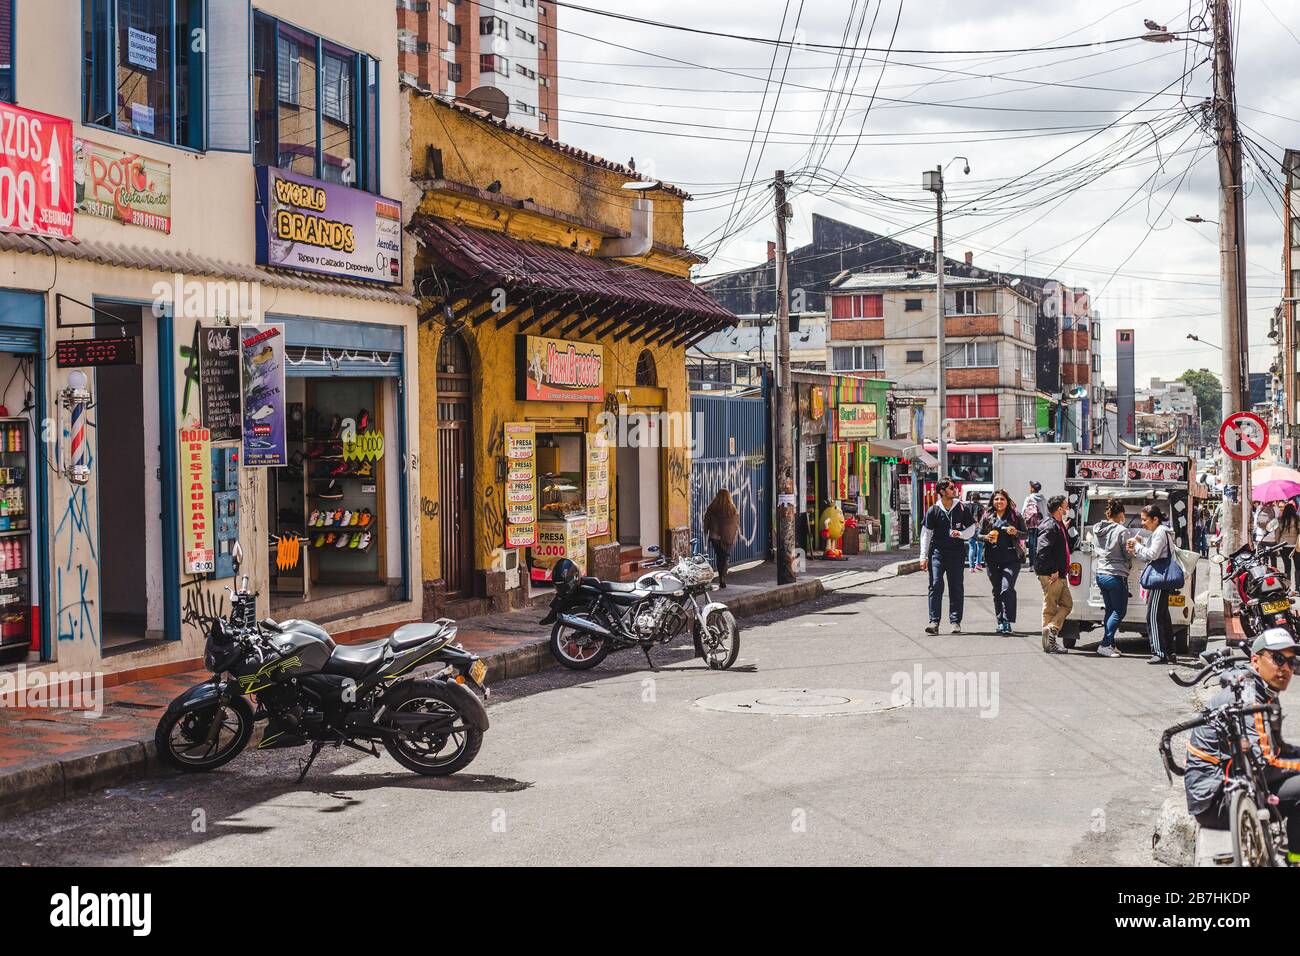 Rue typique à Chapinero Central barrio de Bogota, Colombie. Petites boutiques colorées, motos garées et piétons achetant des plats de rue Banque D'Images